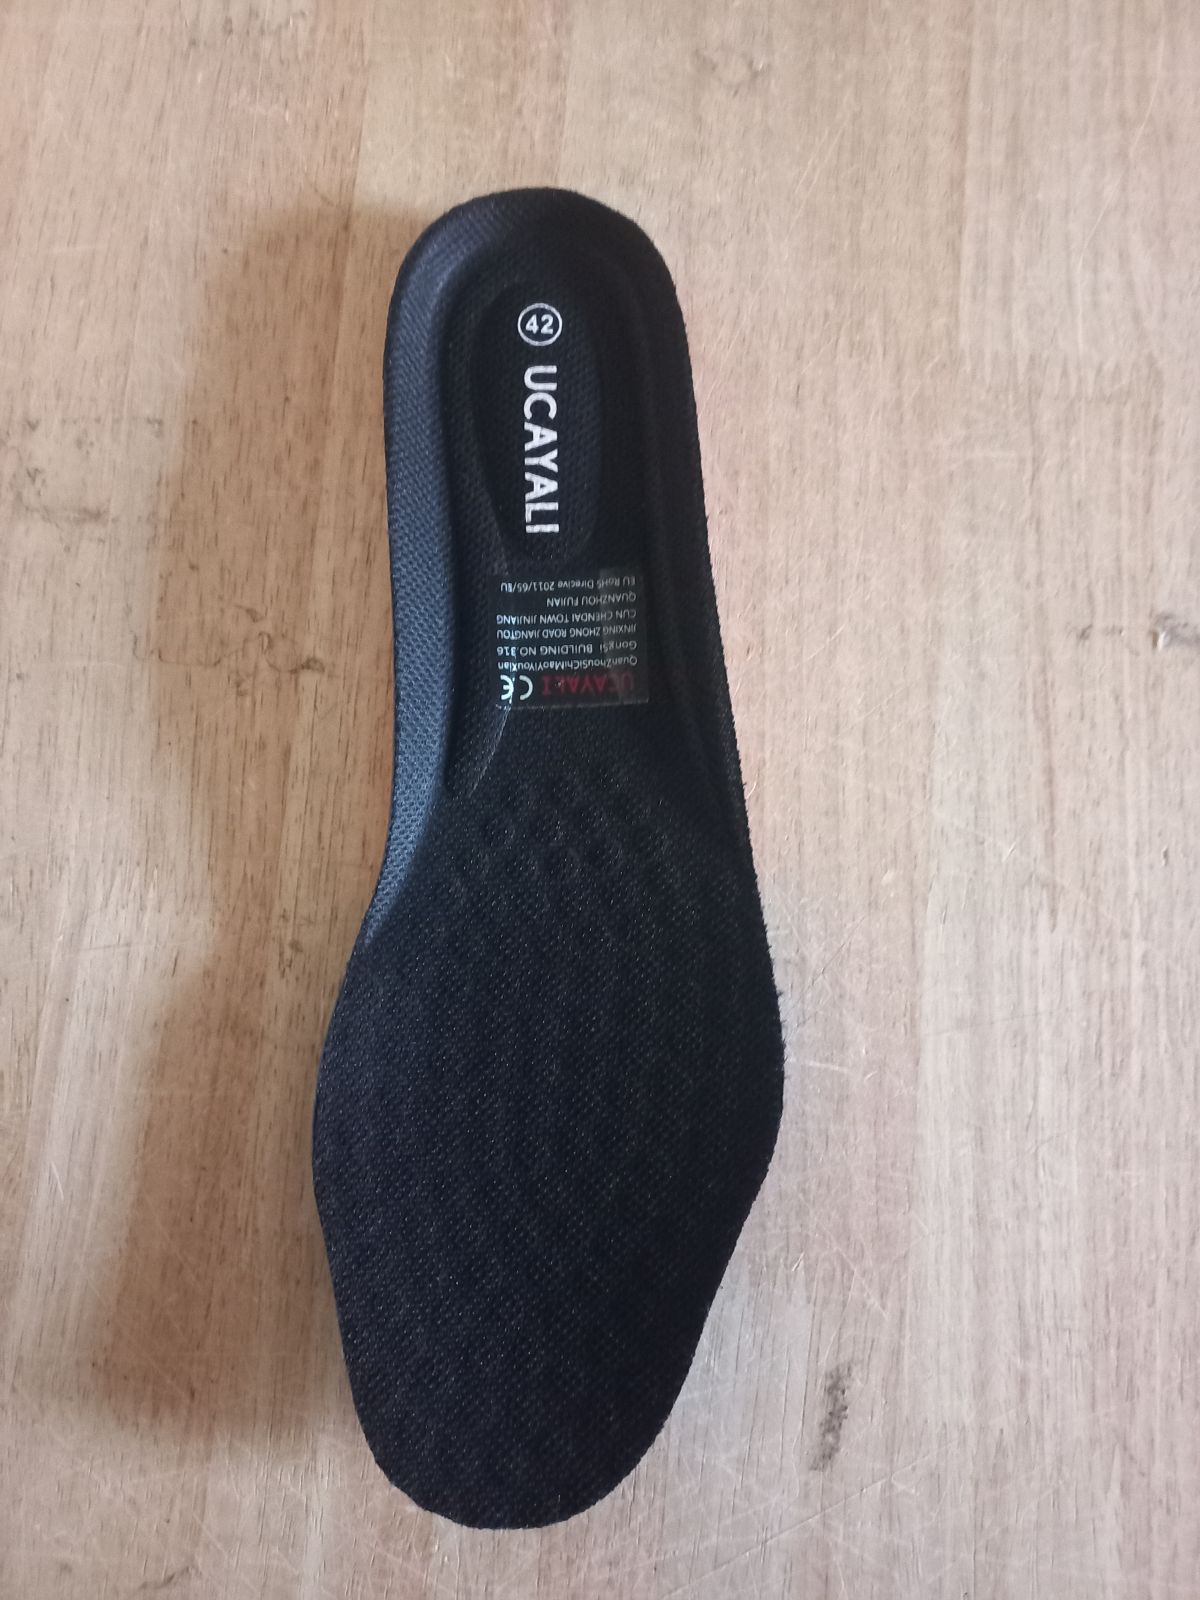 Safety shoes Ucayali, unisex, black, size 42